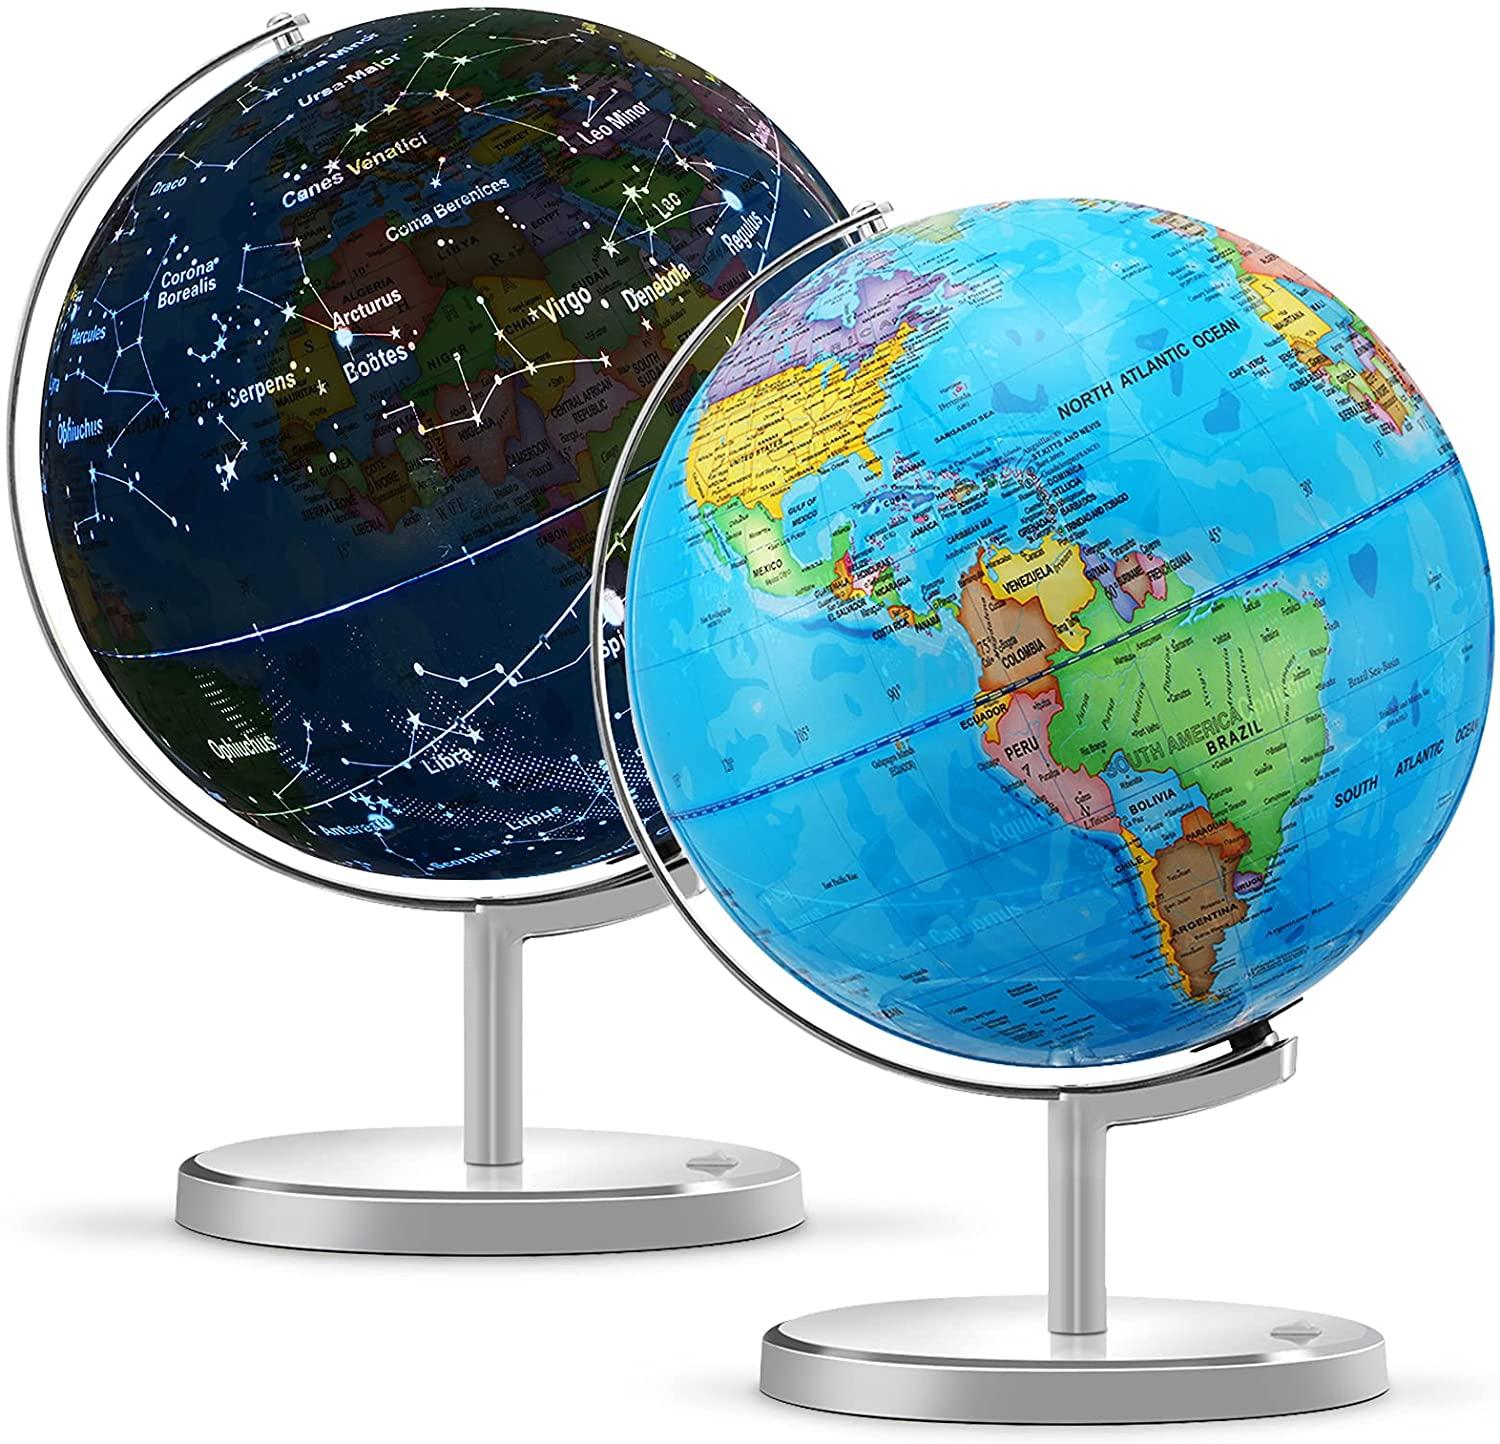 KingSo Interactive LED Illuminated Spinning World Globe for $24.95 Shipped